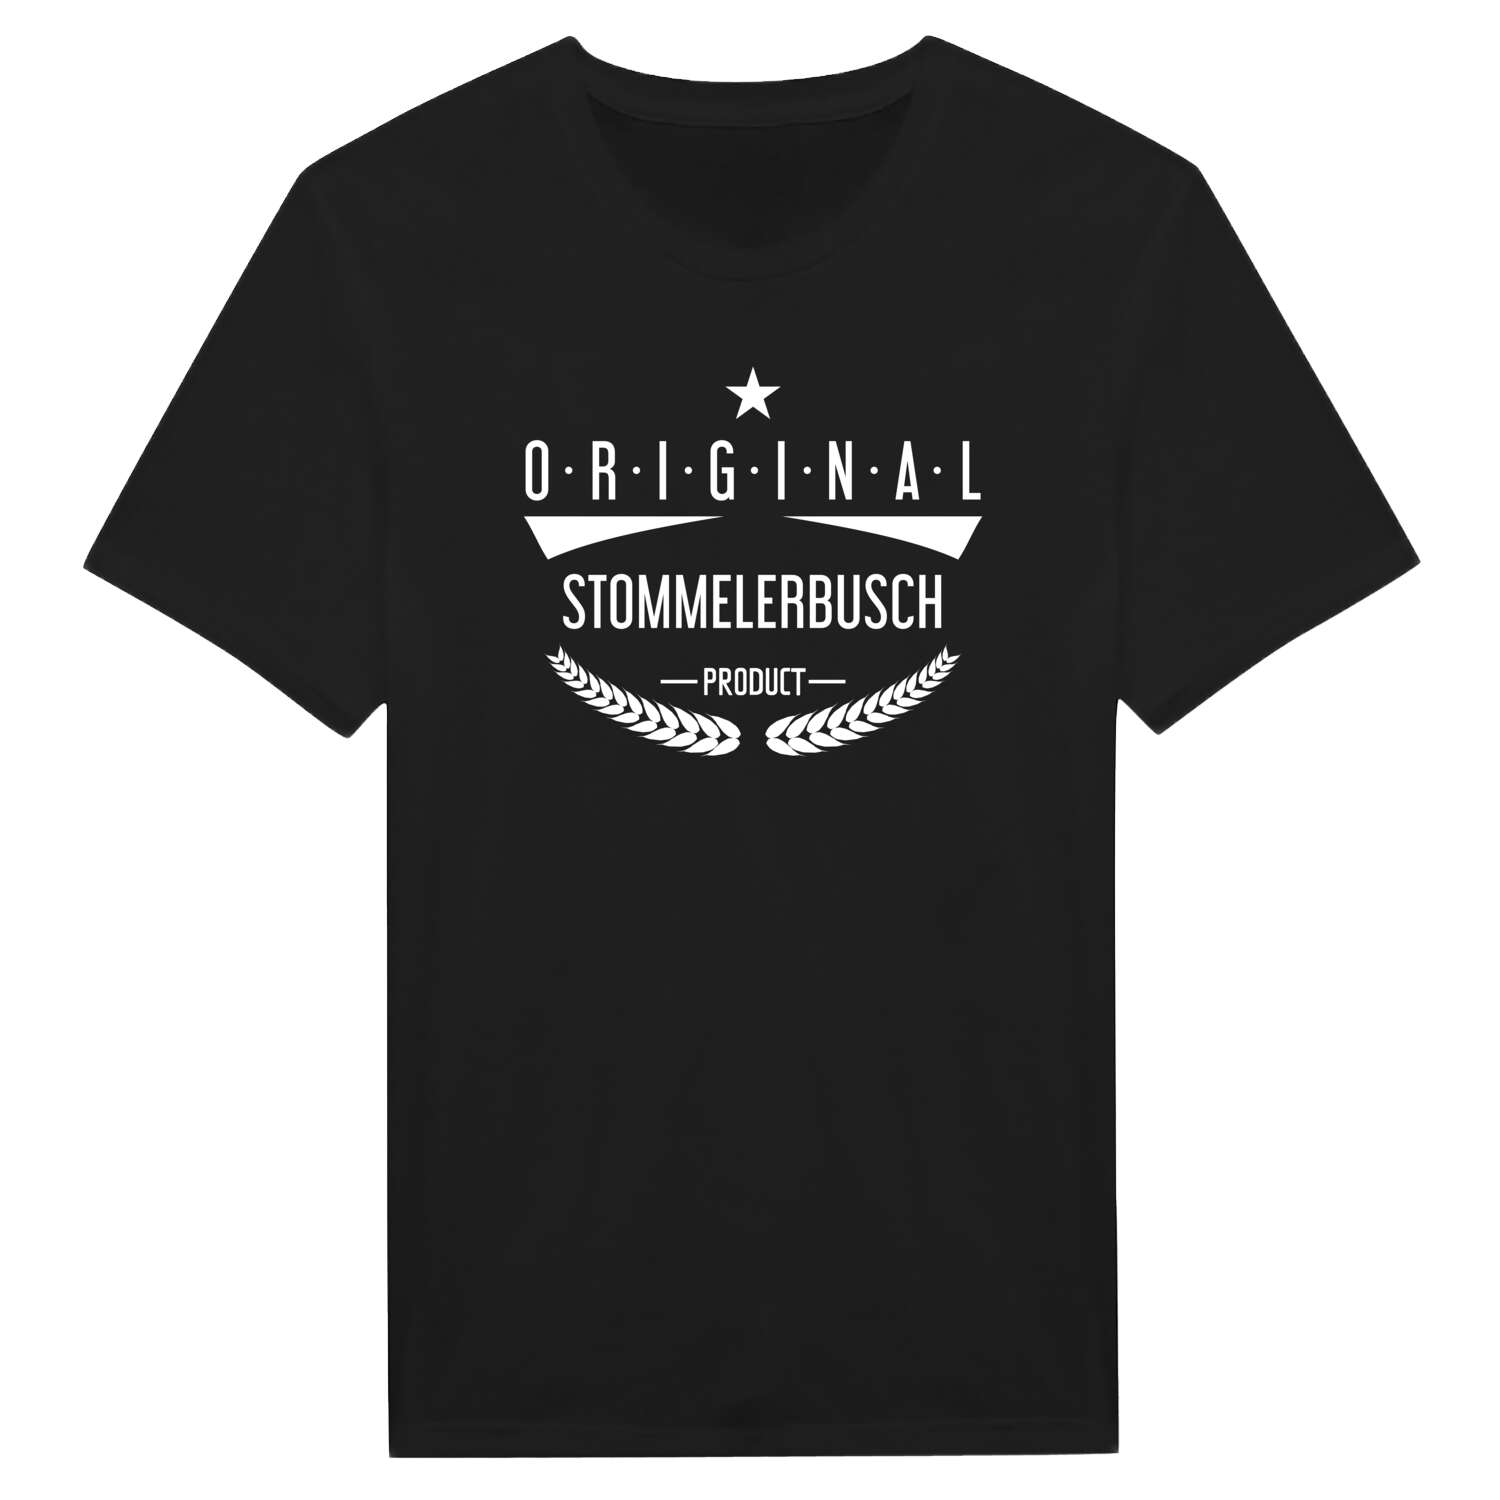 Stommelerbusch T-Shirt »Original Product«